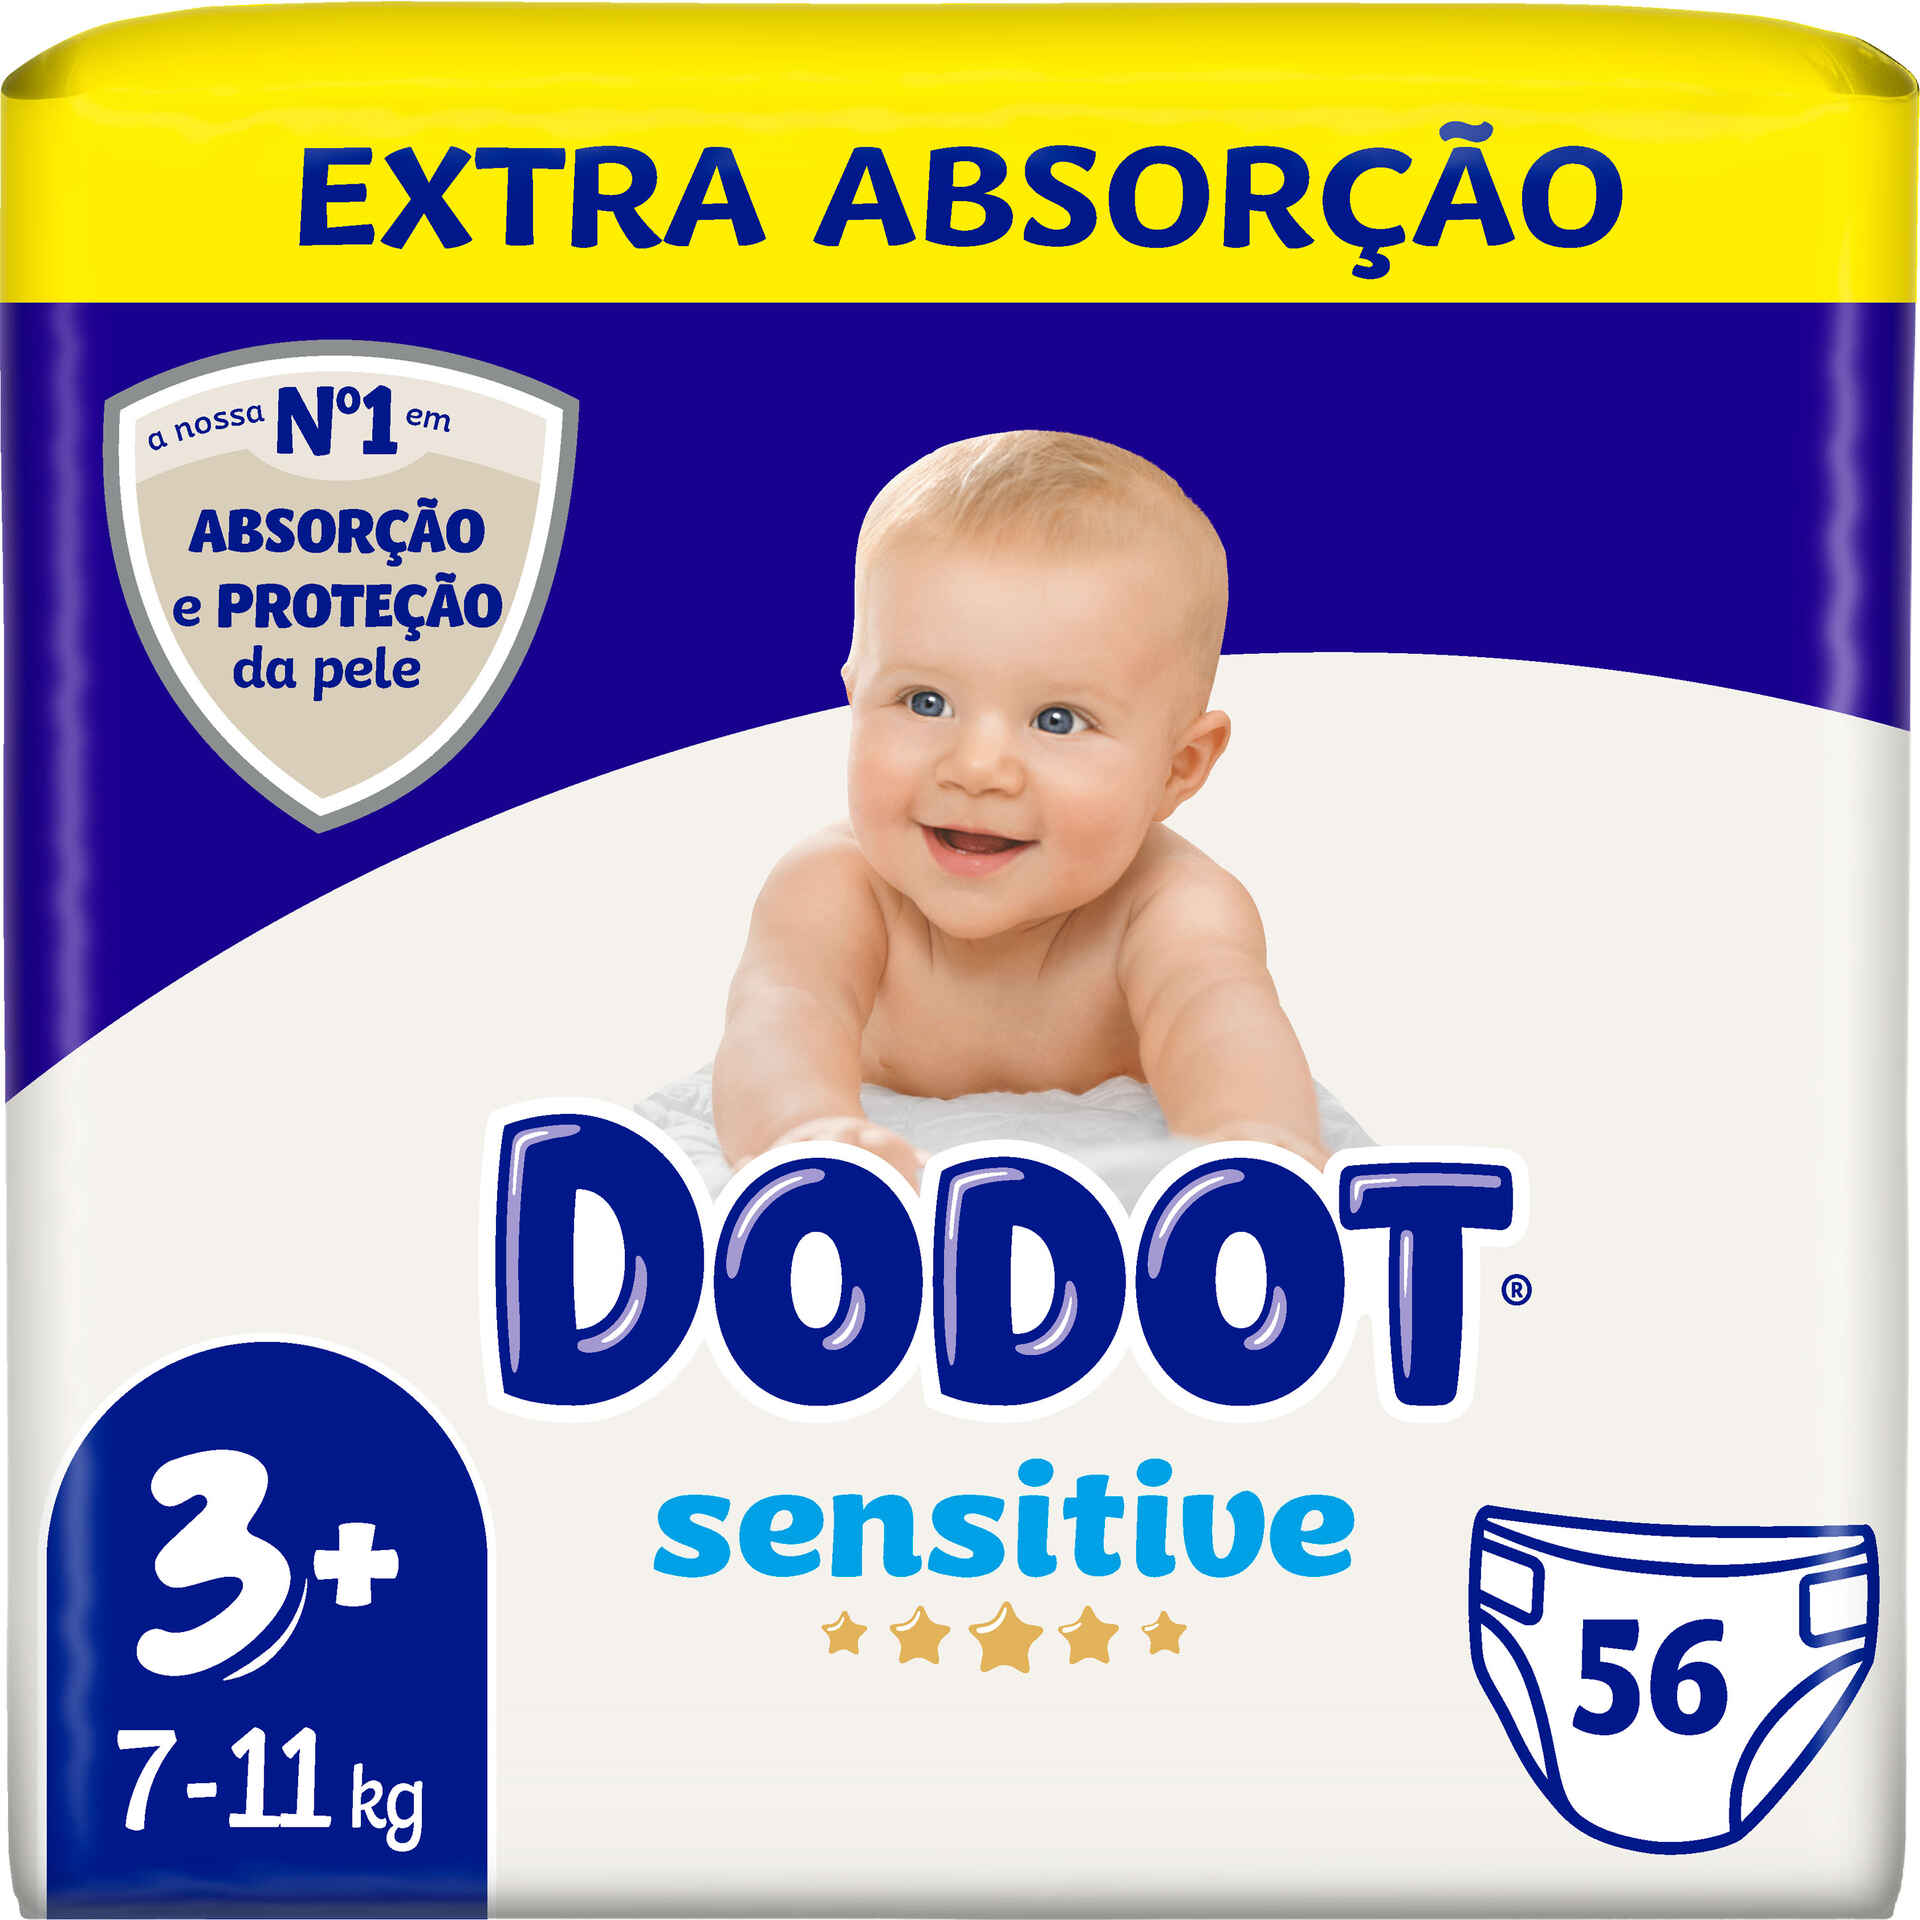 Dodot Fraldas de bebé sensível tamanho 3, 1 pacote - 198 fraldas